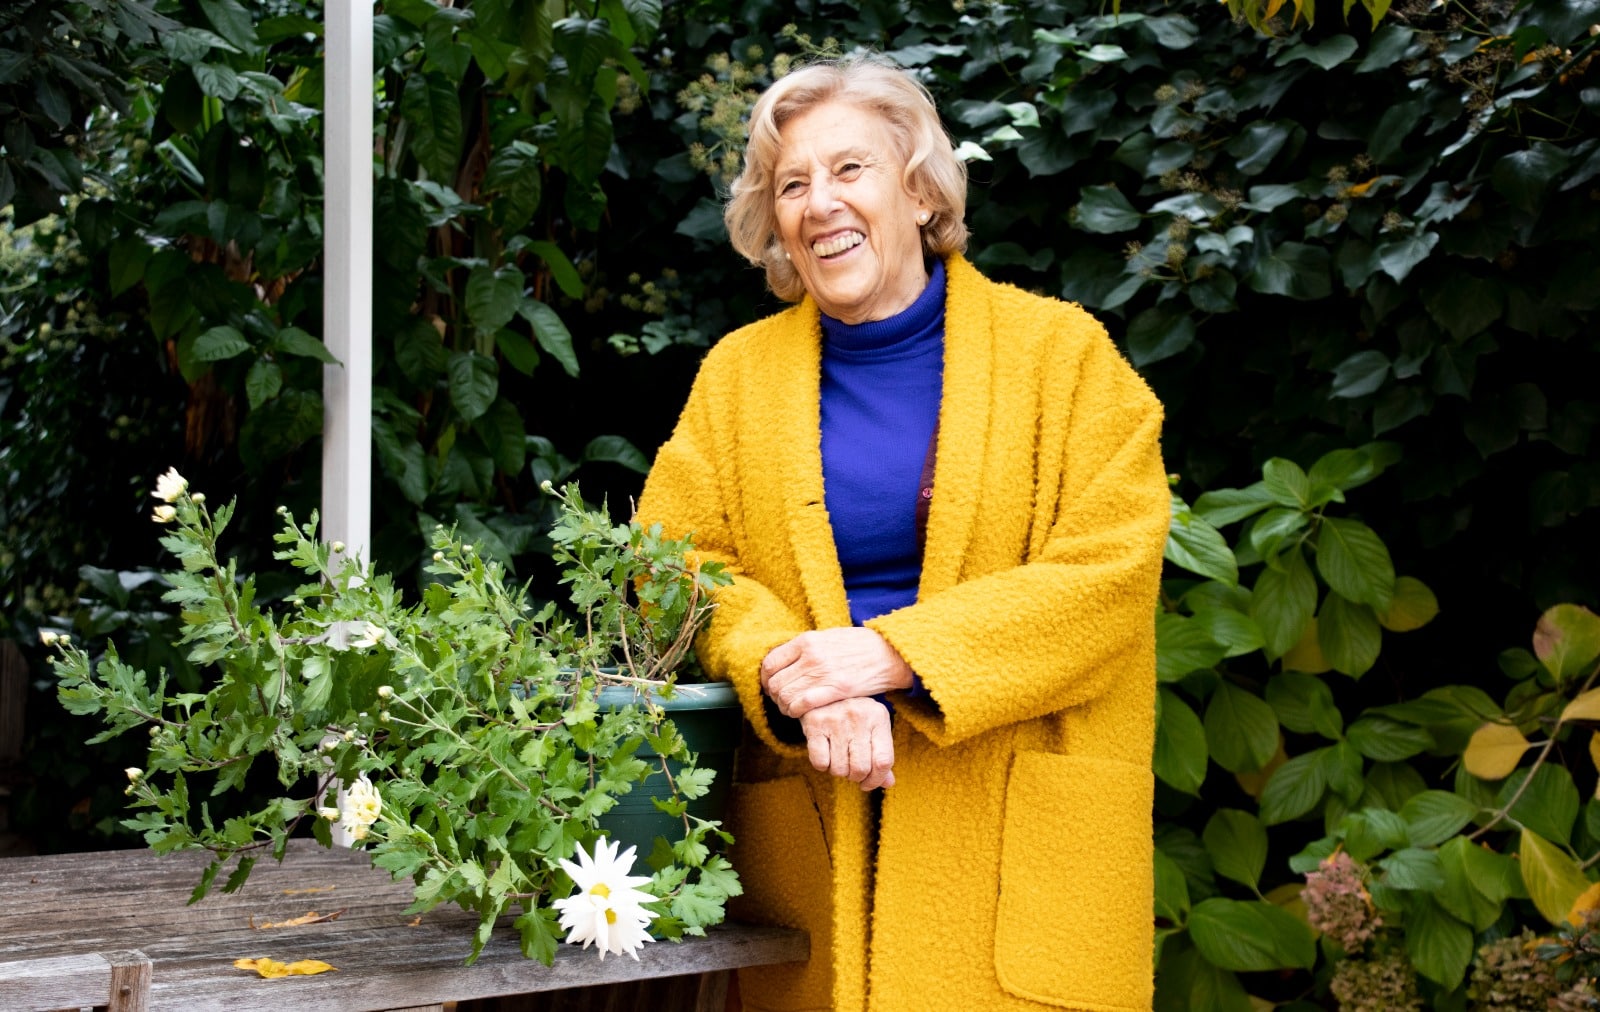 La ex alcaldesa de Madrid Manuela Carmena, en el jardín de su casa, durante una entrevista con El Independiente